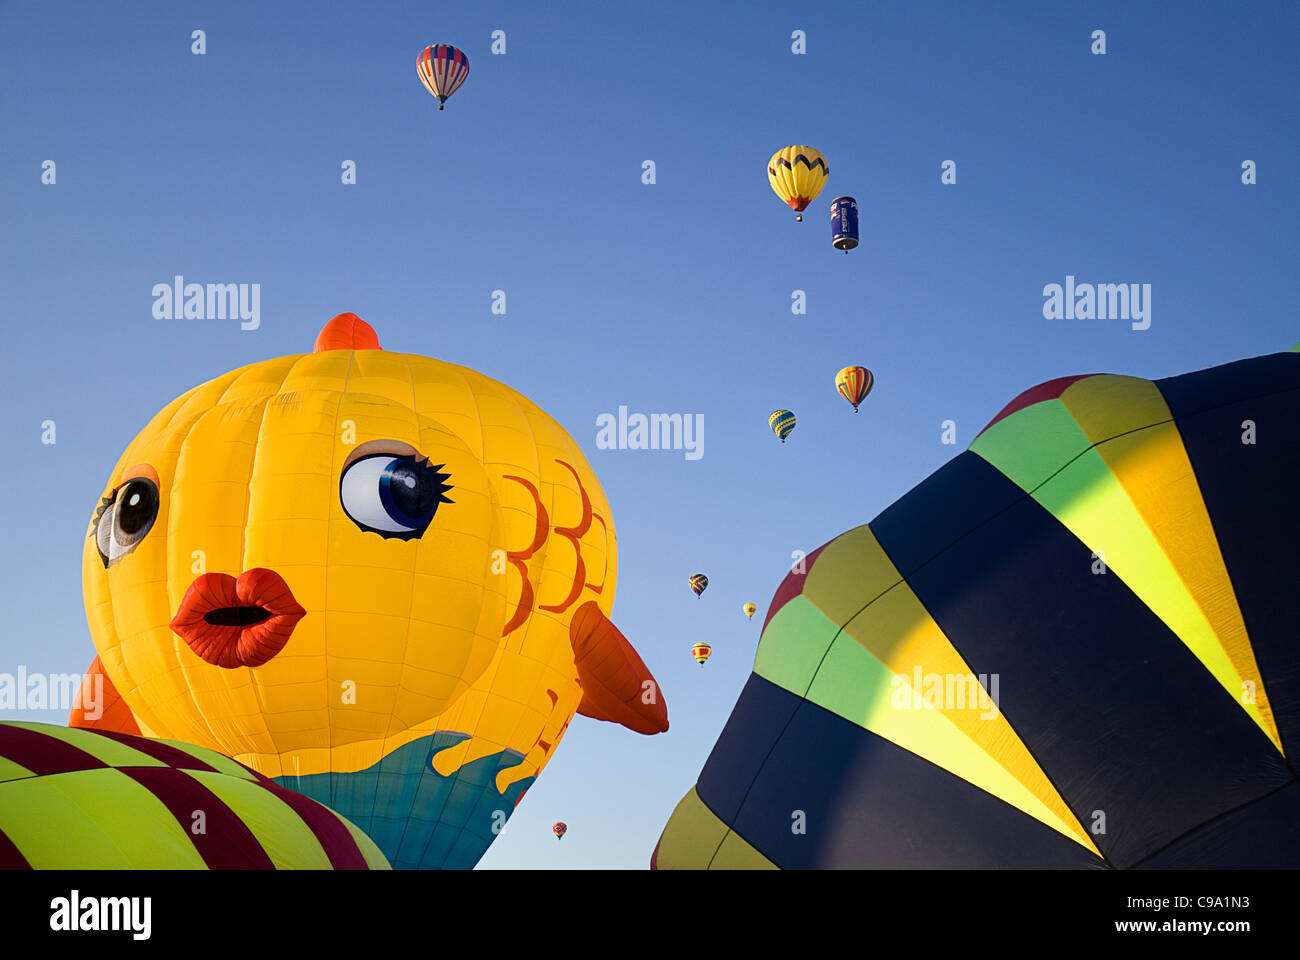 USA, New Mexico, Albuquerque, Annual balloon fiesta, Colourful hot air balloons. Stock Photo